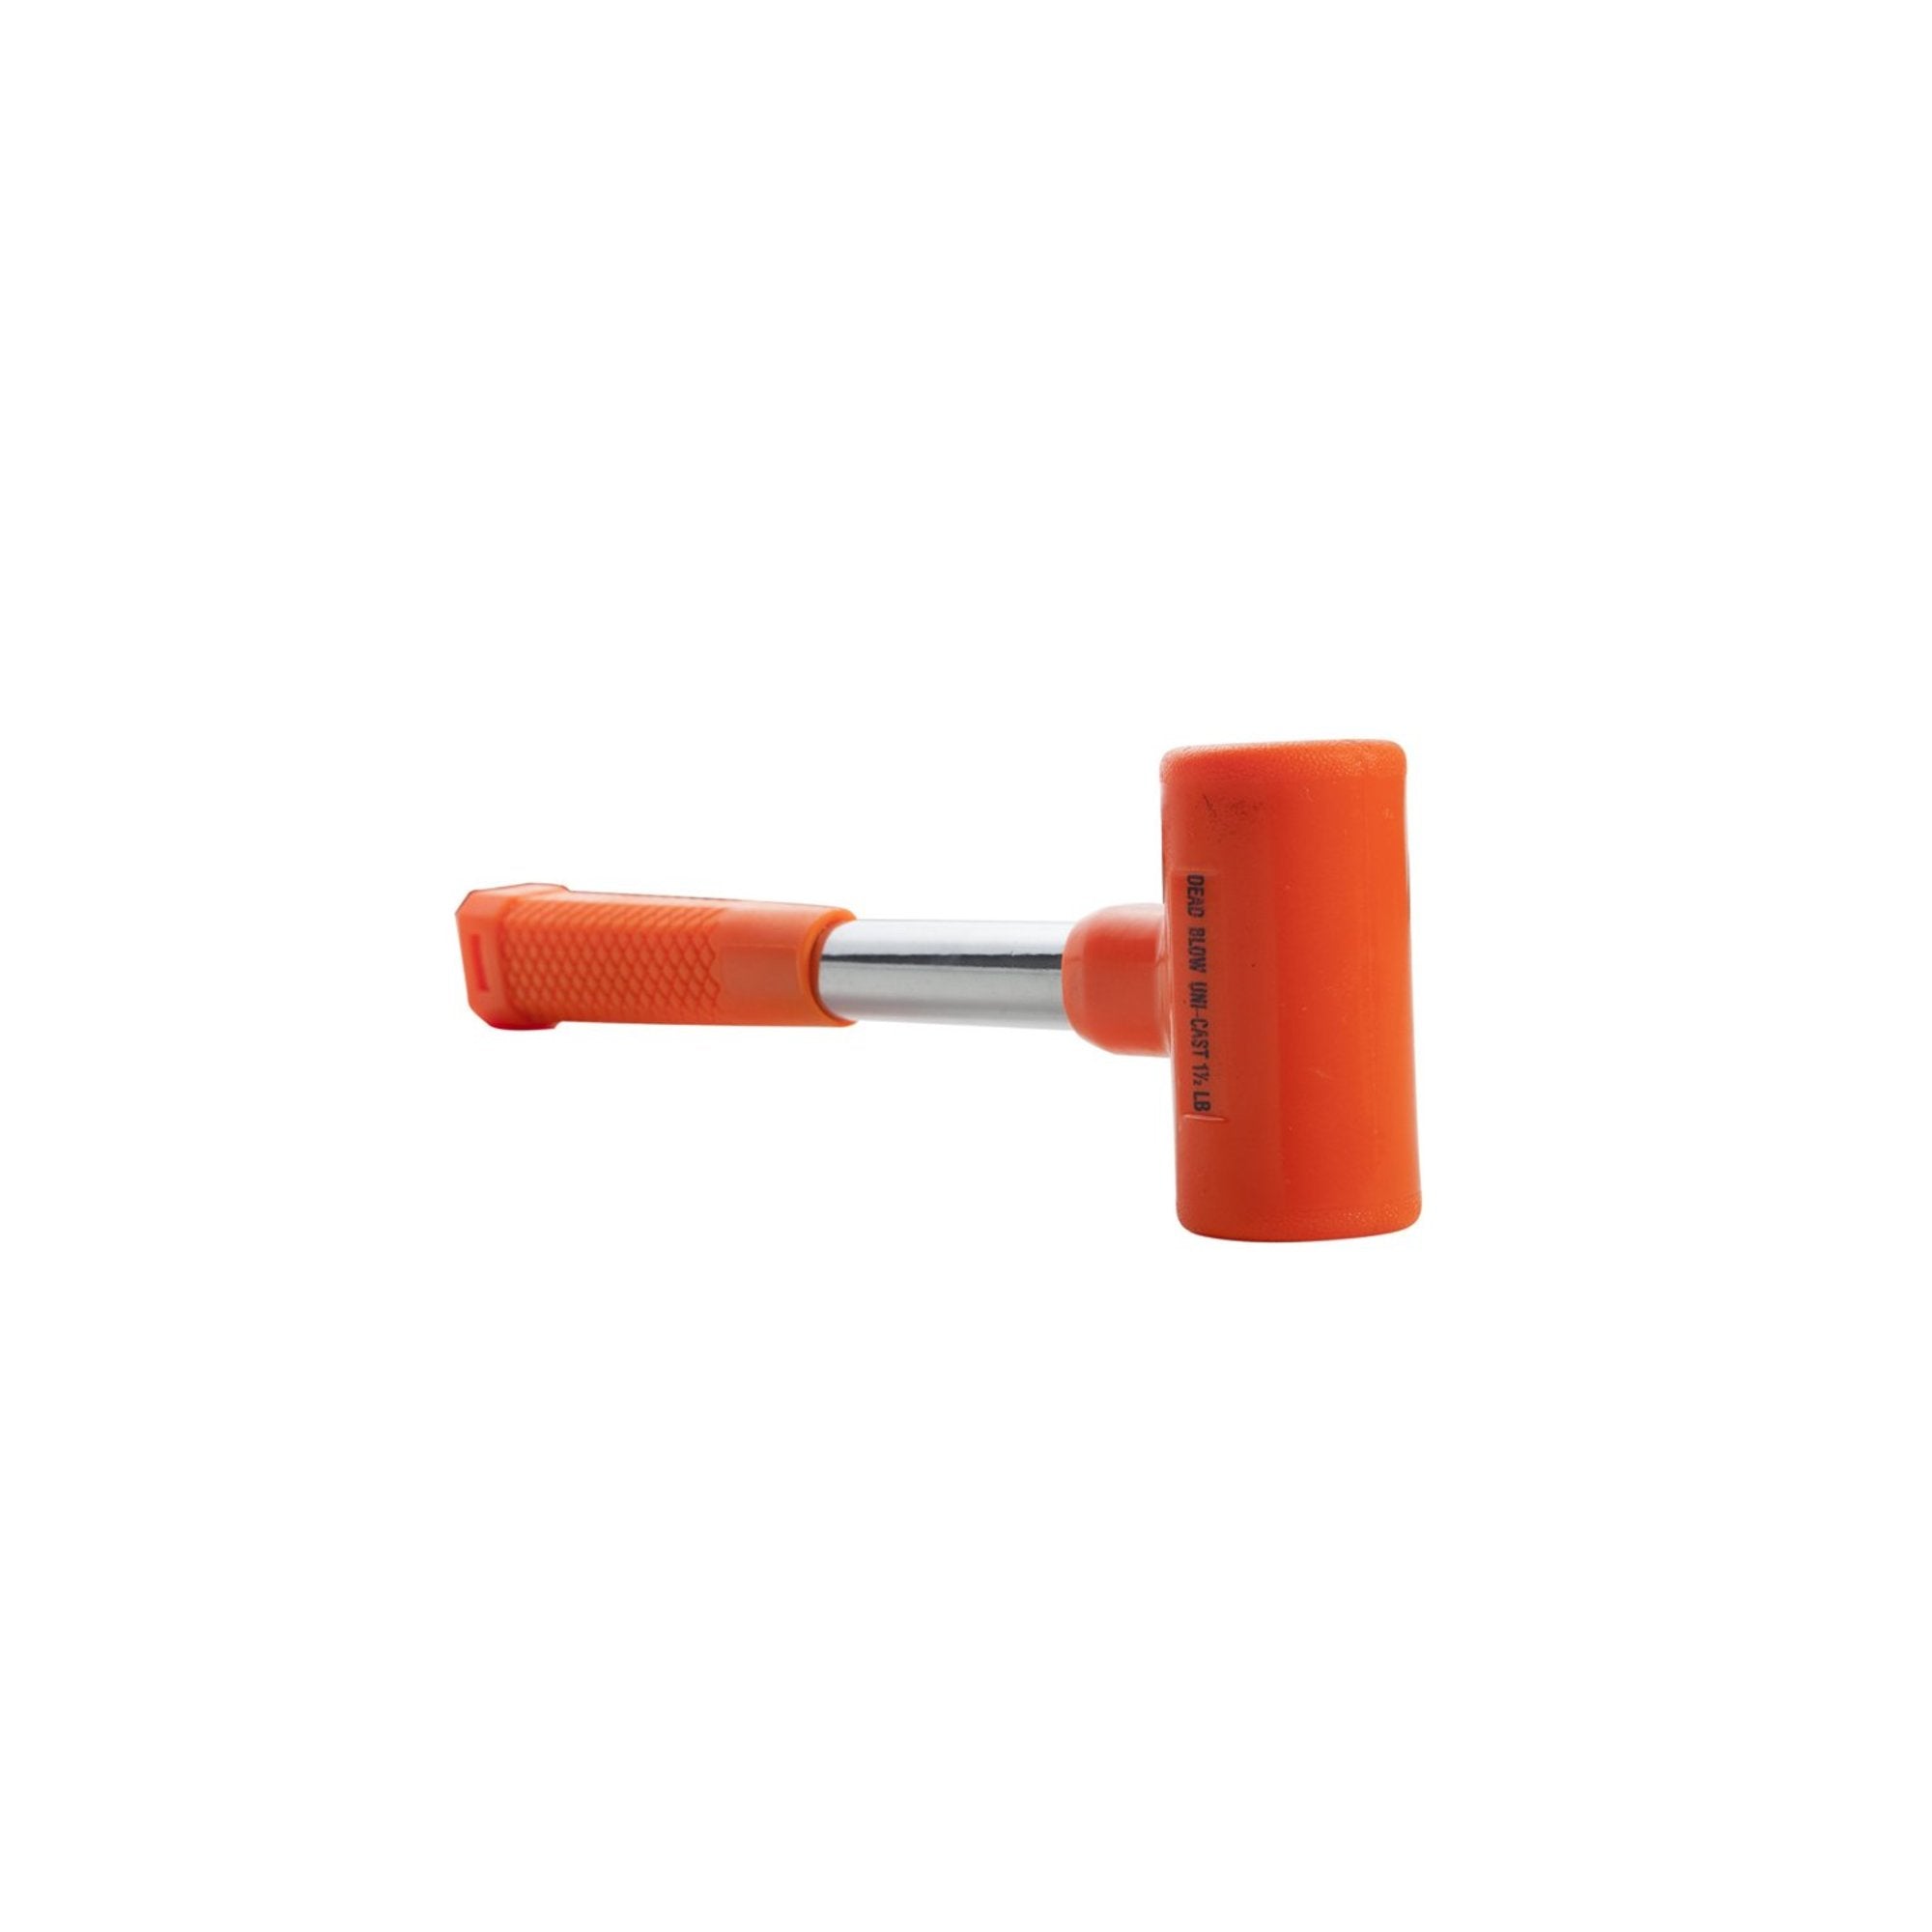 Steelman 301650 24-Ounce Dead Blow Hammer, Orange – Steelman Tools